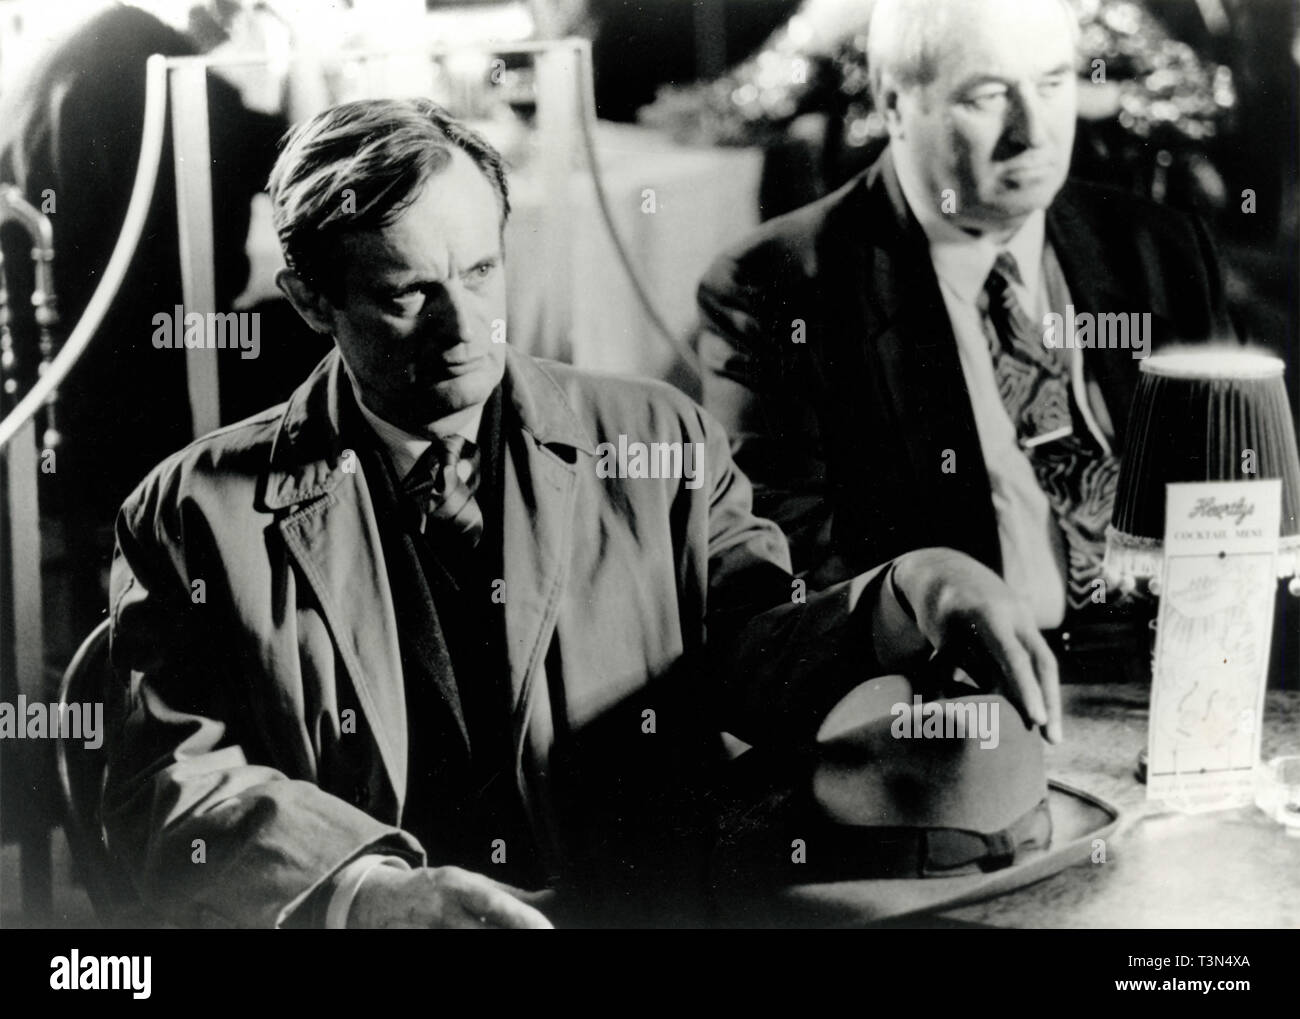 Acteurs Adrian Dunbar et Ned Beatty dans le film d'entendre ma chanson, 1991 Banque D'Images